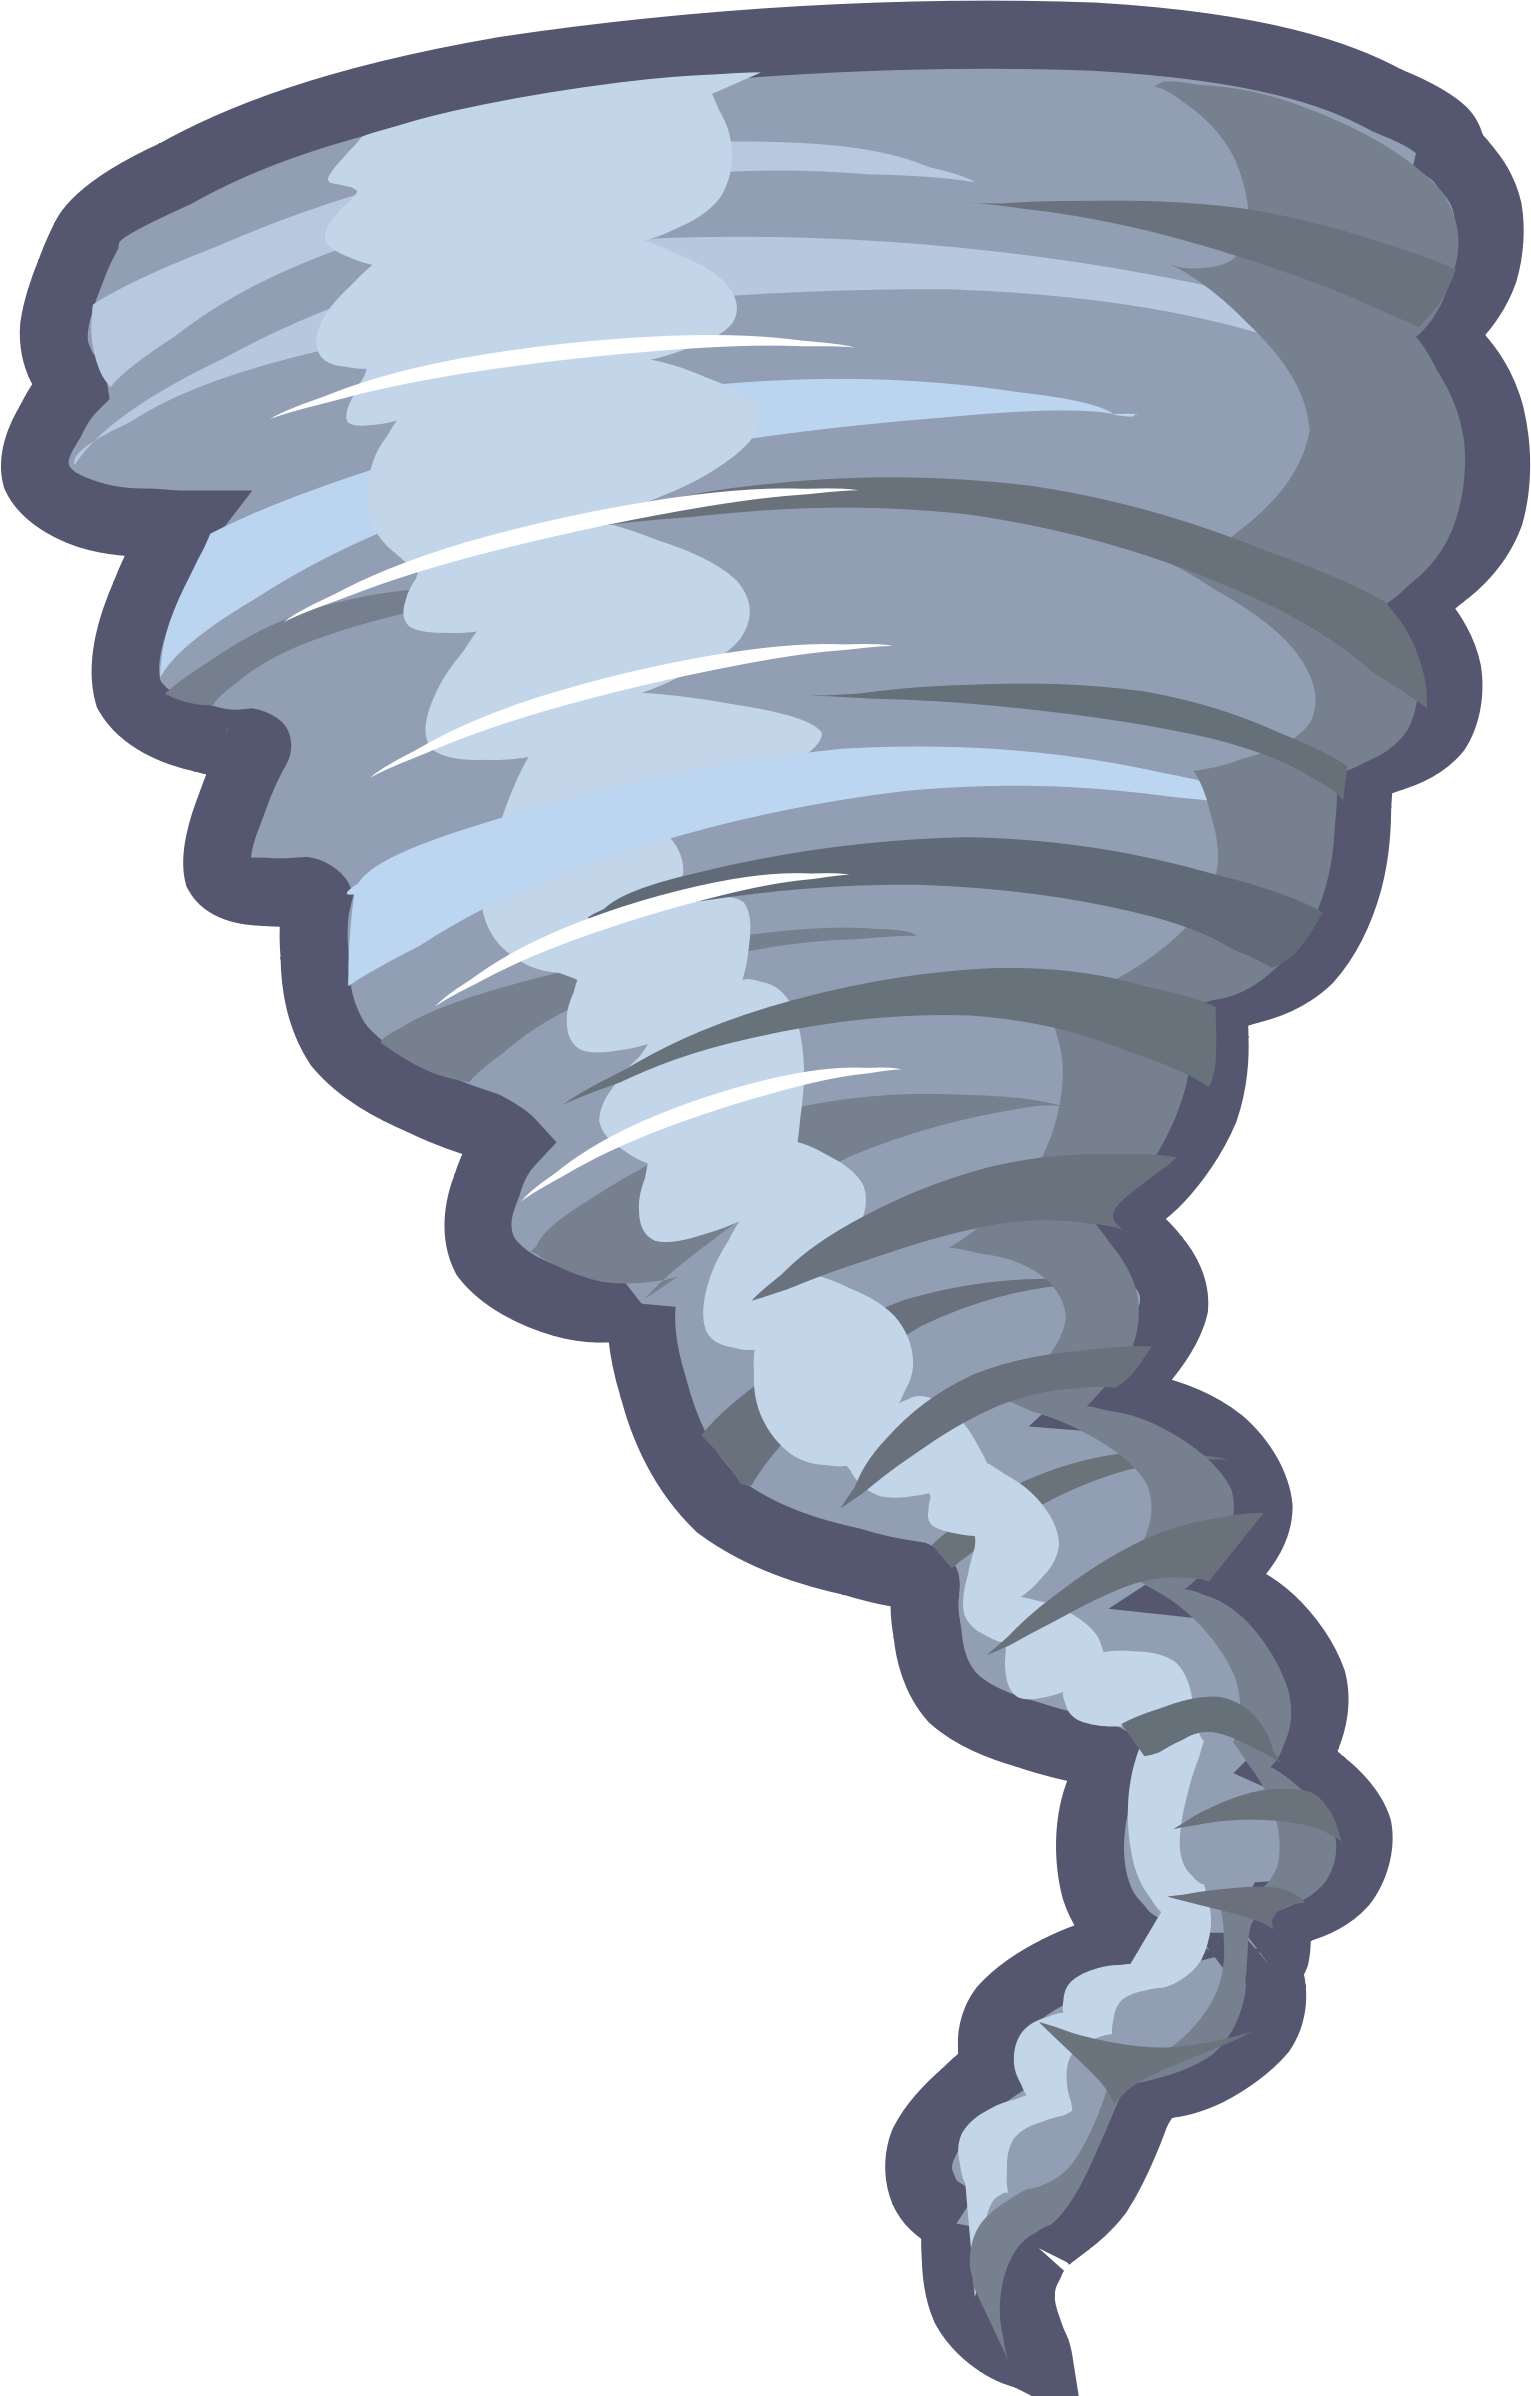 Tornado Clip Art - Images, Illustrations, Photos